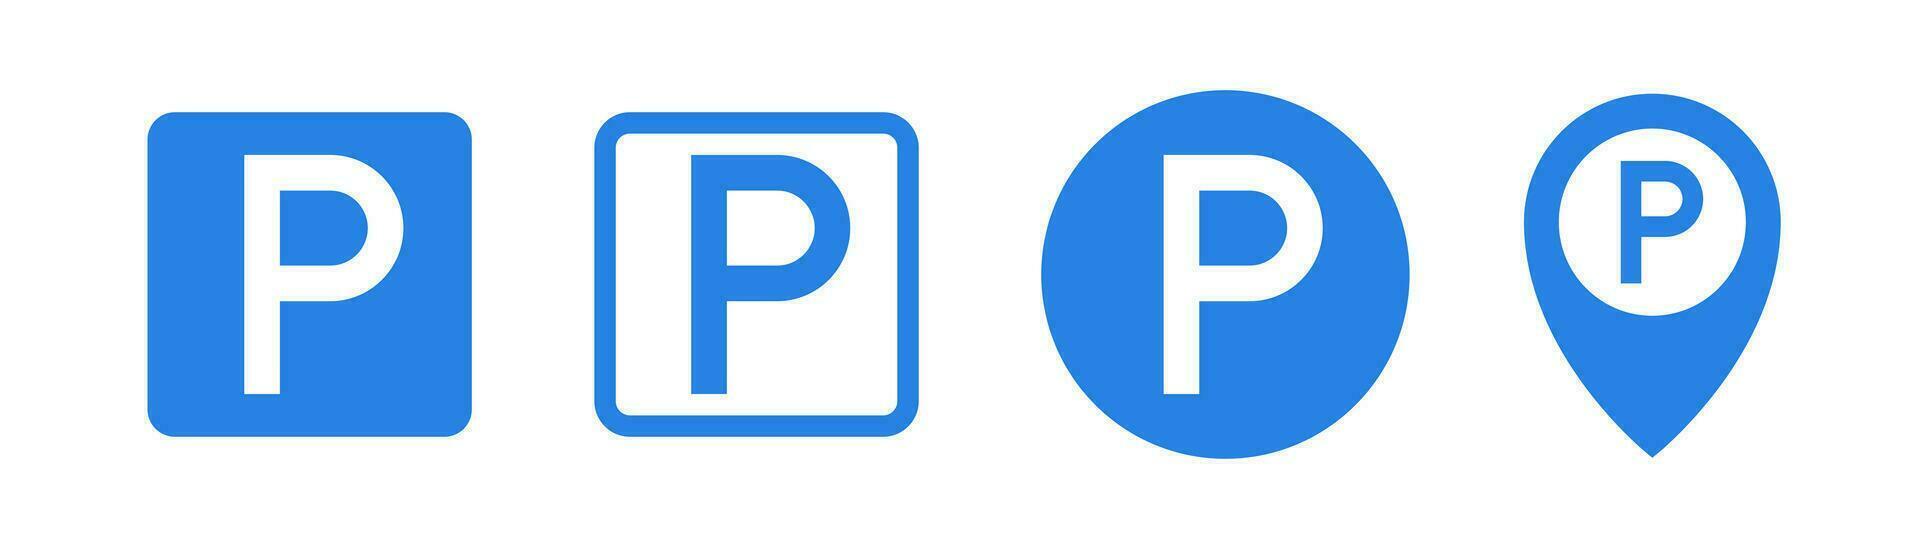 estacionamiento signo. estacionamiento zona advertir. cuadrado y redondo estacionamiento símbolo. navegación signo. valores vector